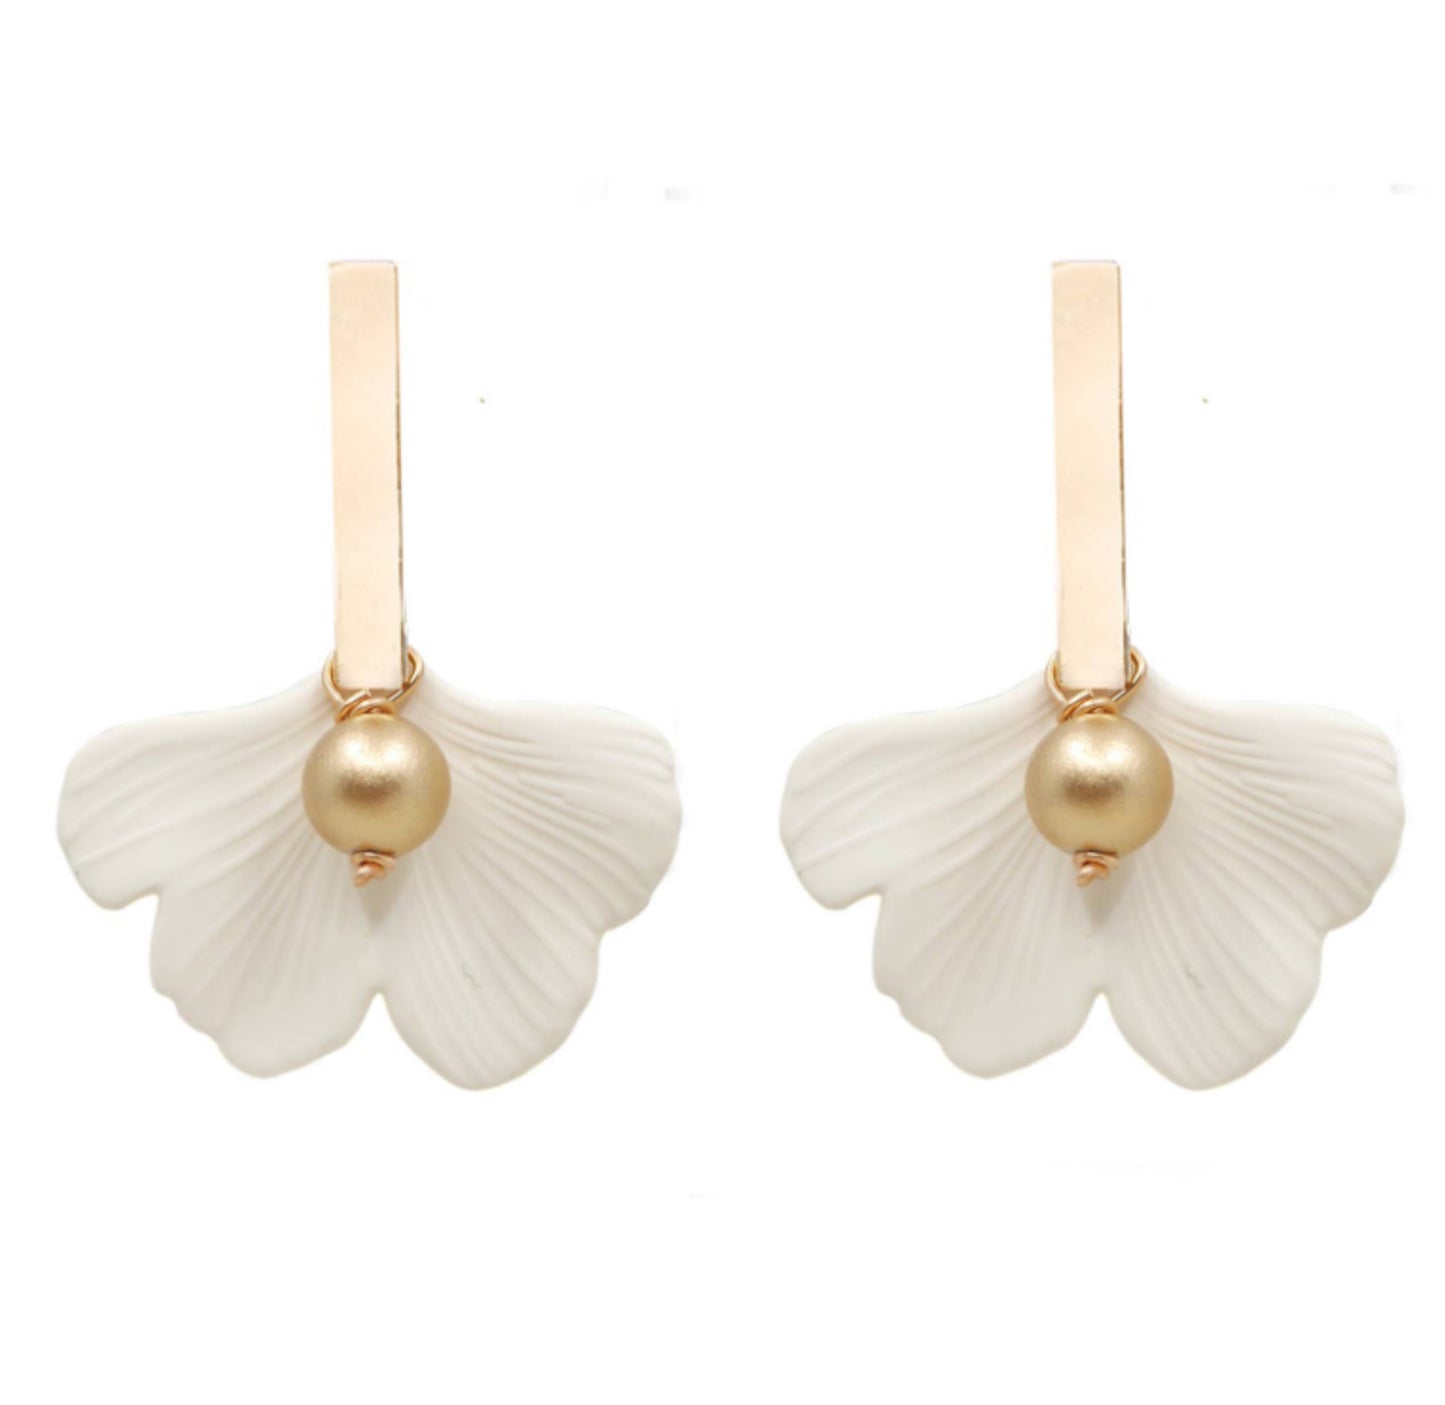 Gingko Leaf & Gold Bar Earring - 2 Colors